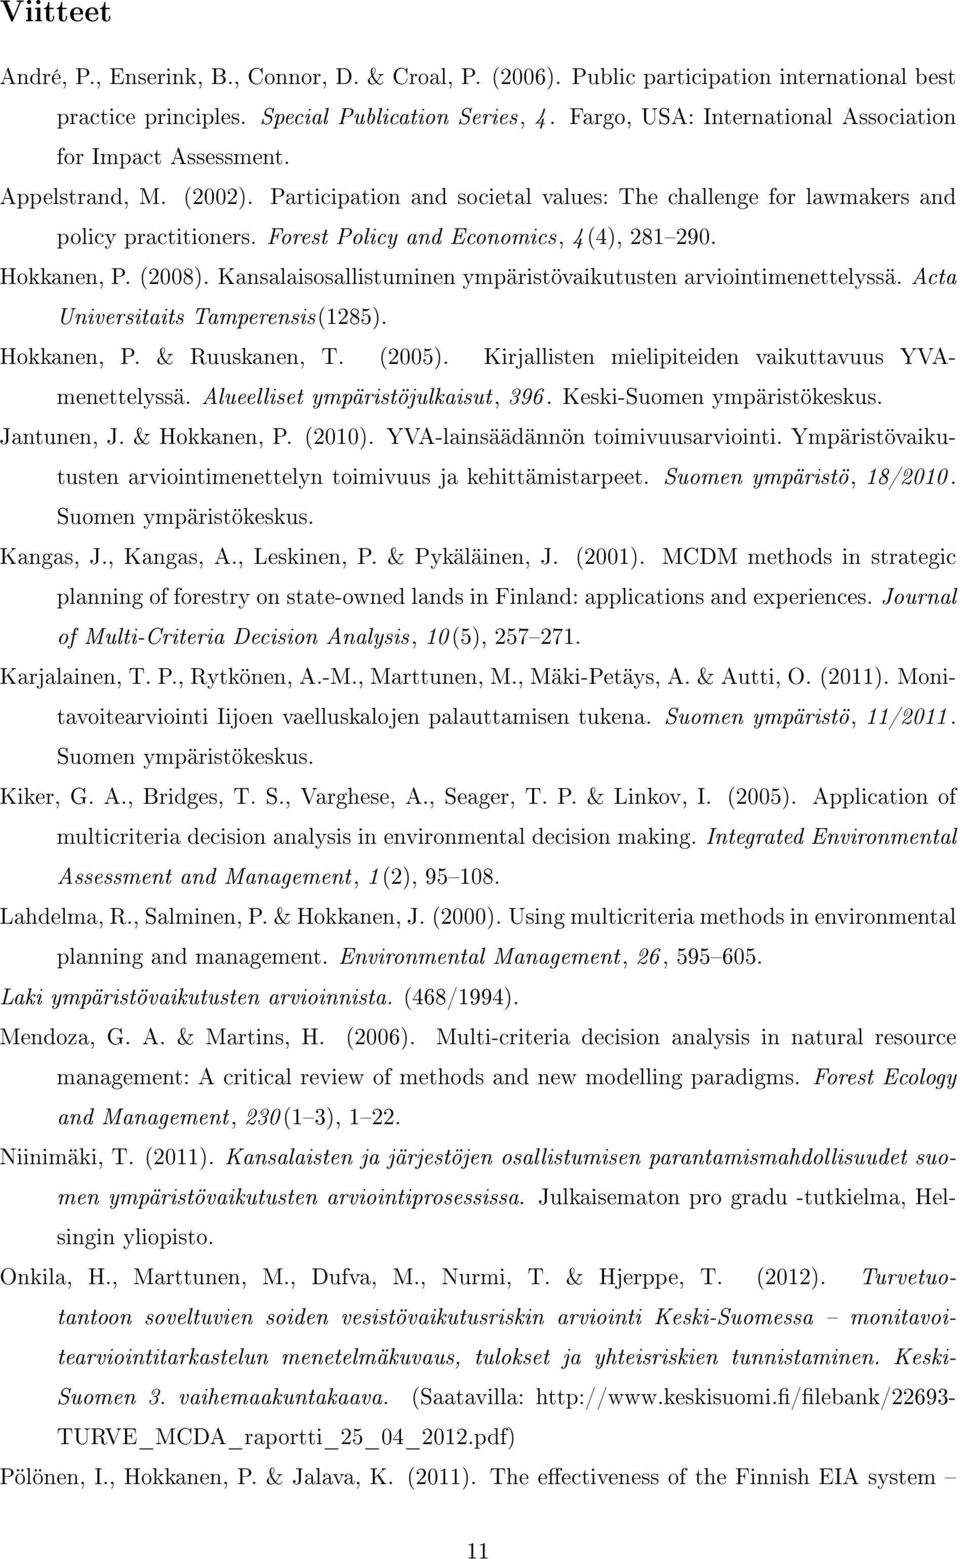 Forest Policy and Economics, 4(4), 281290. Hokkanen, P. (2008). Kansalaisosallistuminen ympäristövaikutusten arviointimenettelyssä. Acta Universitaits Tamperensis(1285). Hokkanen, P. & Ruuskanen, T.